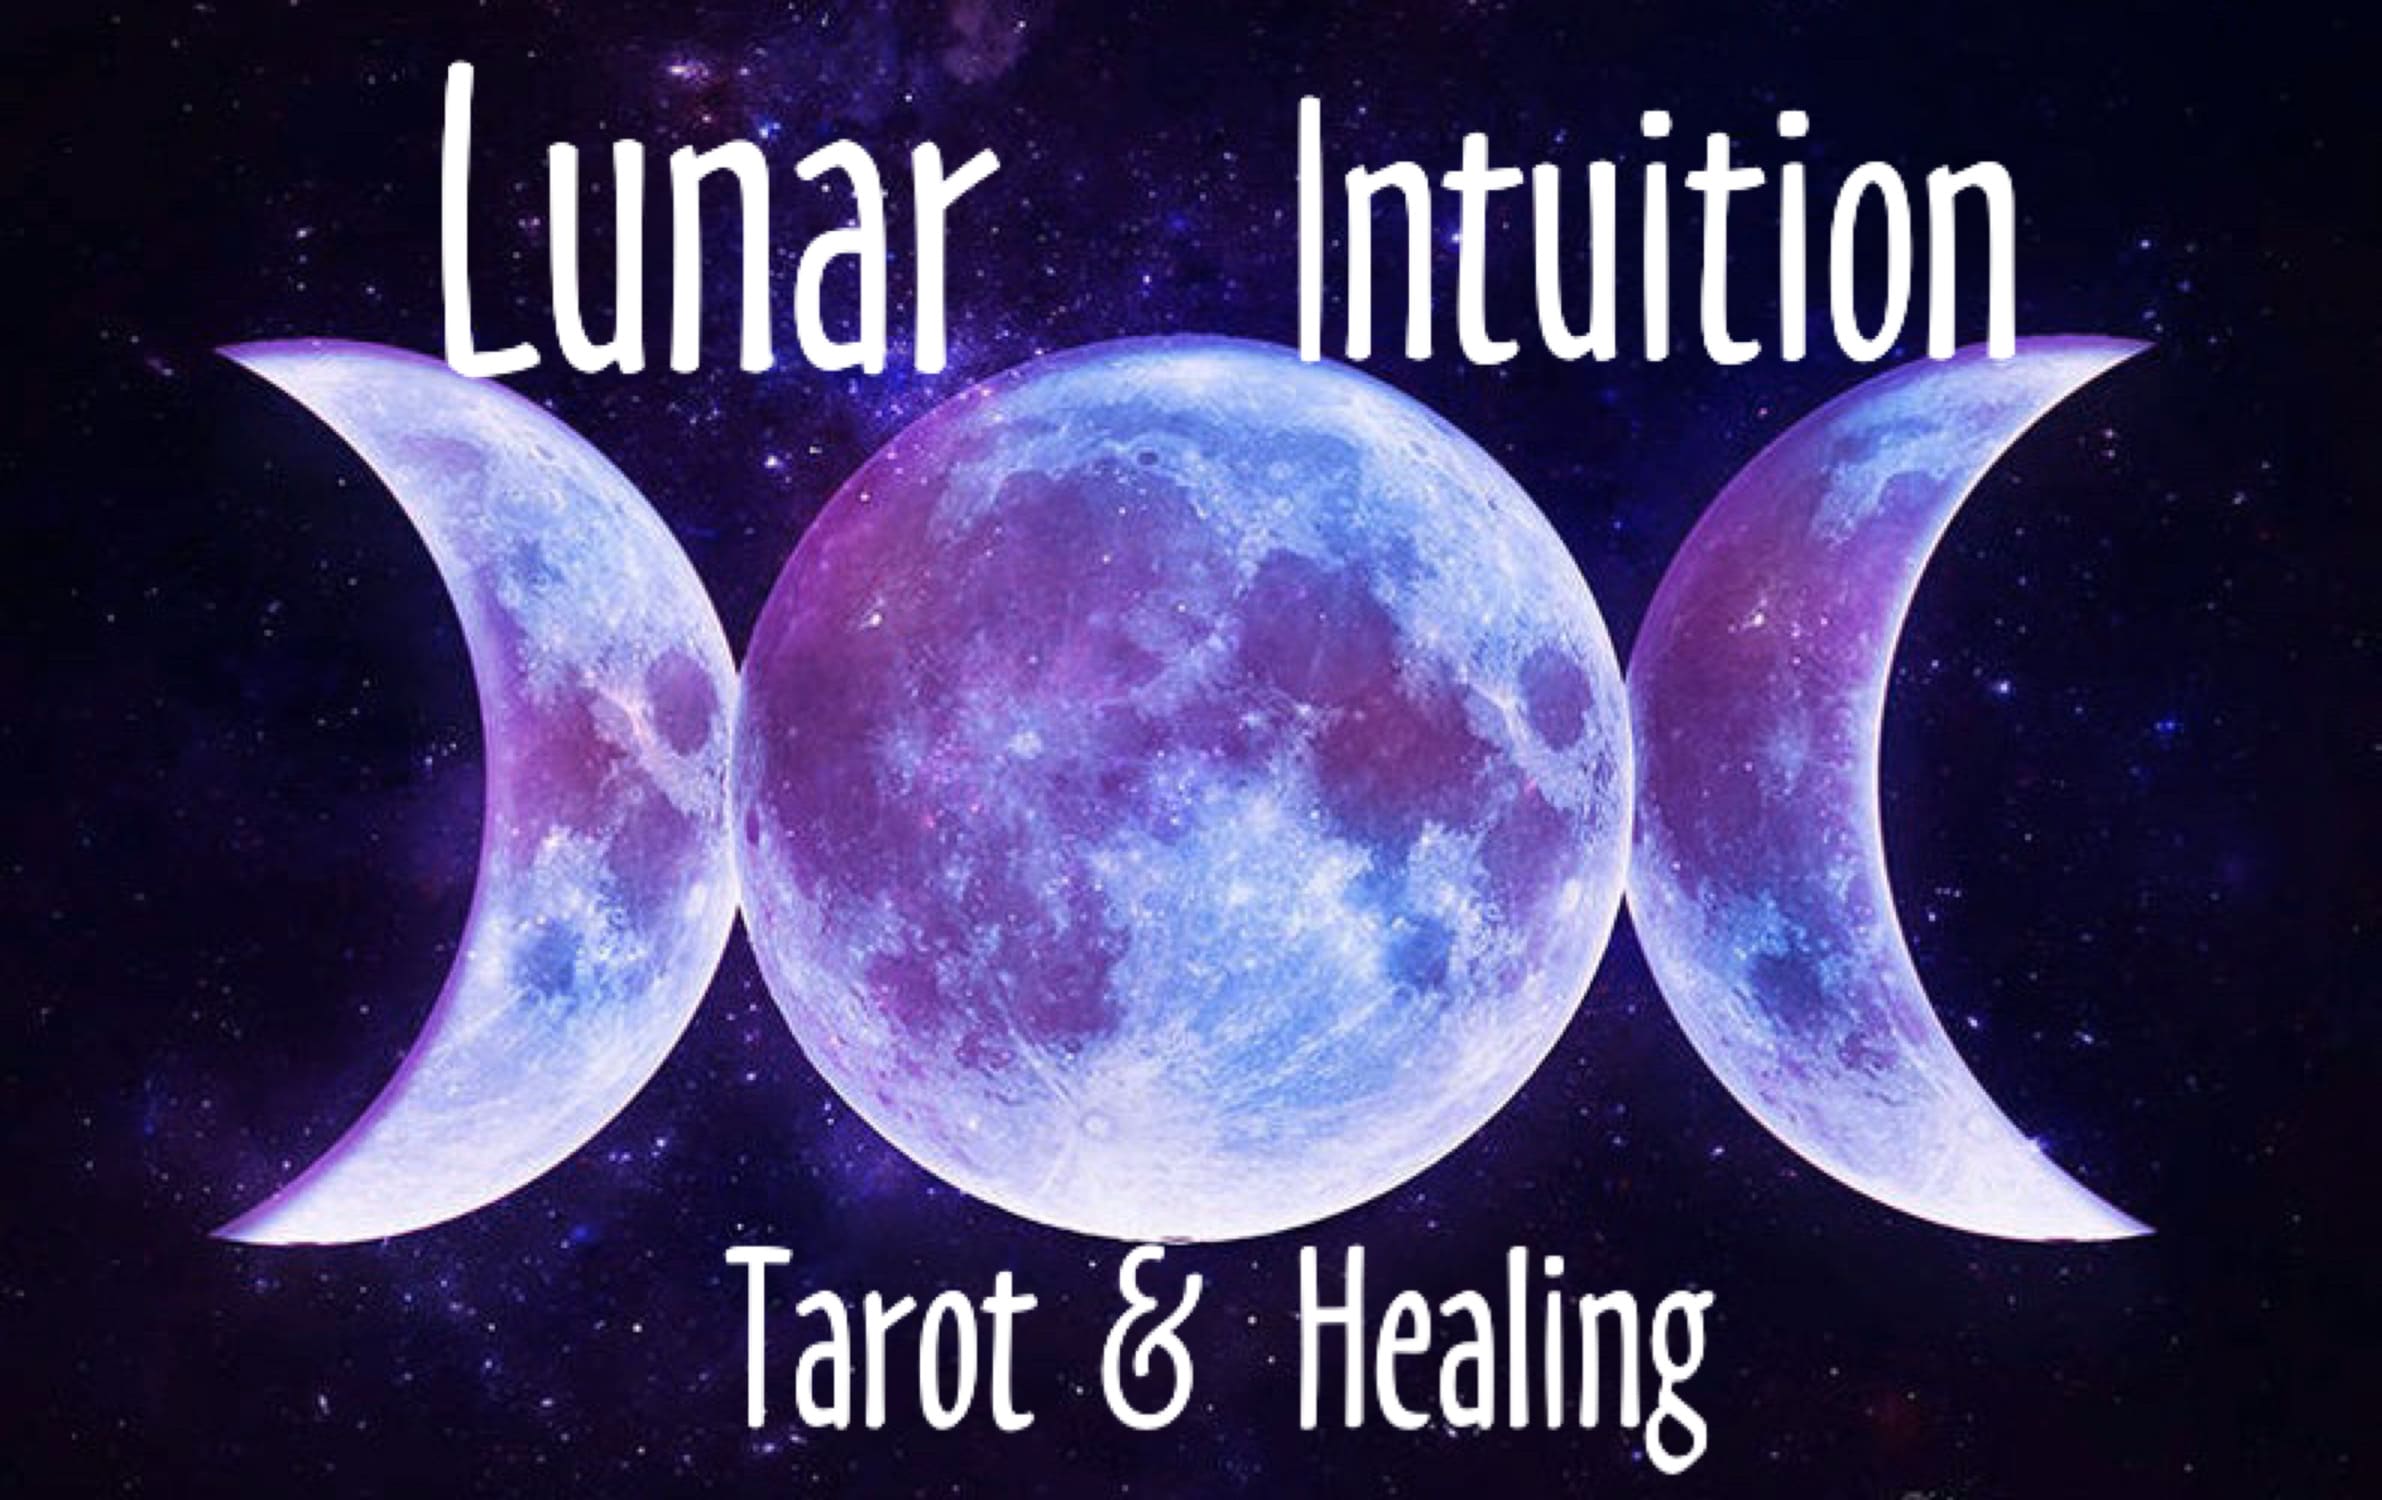 Lunar Intuition Tarot and Healing